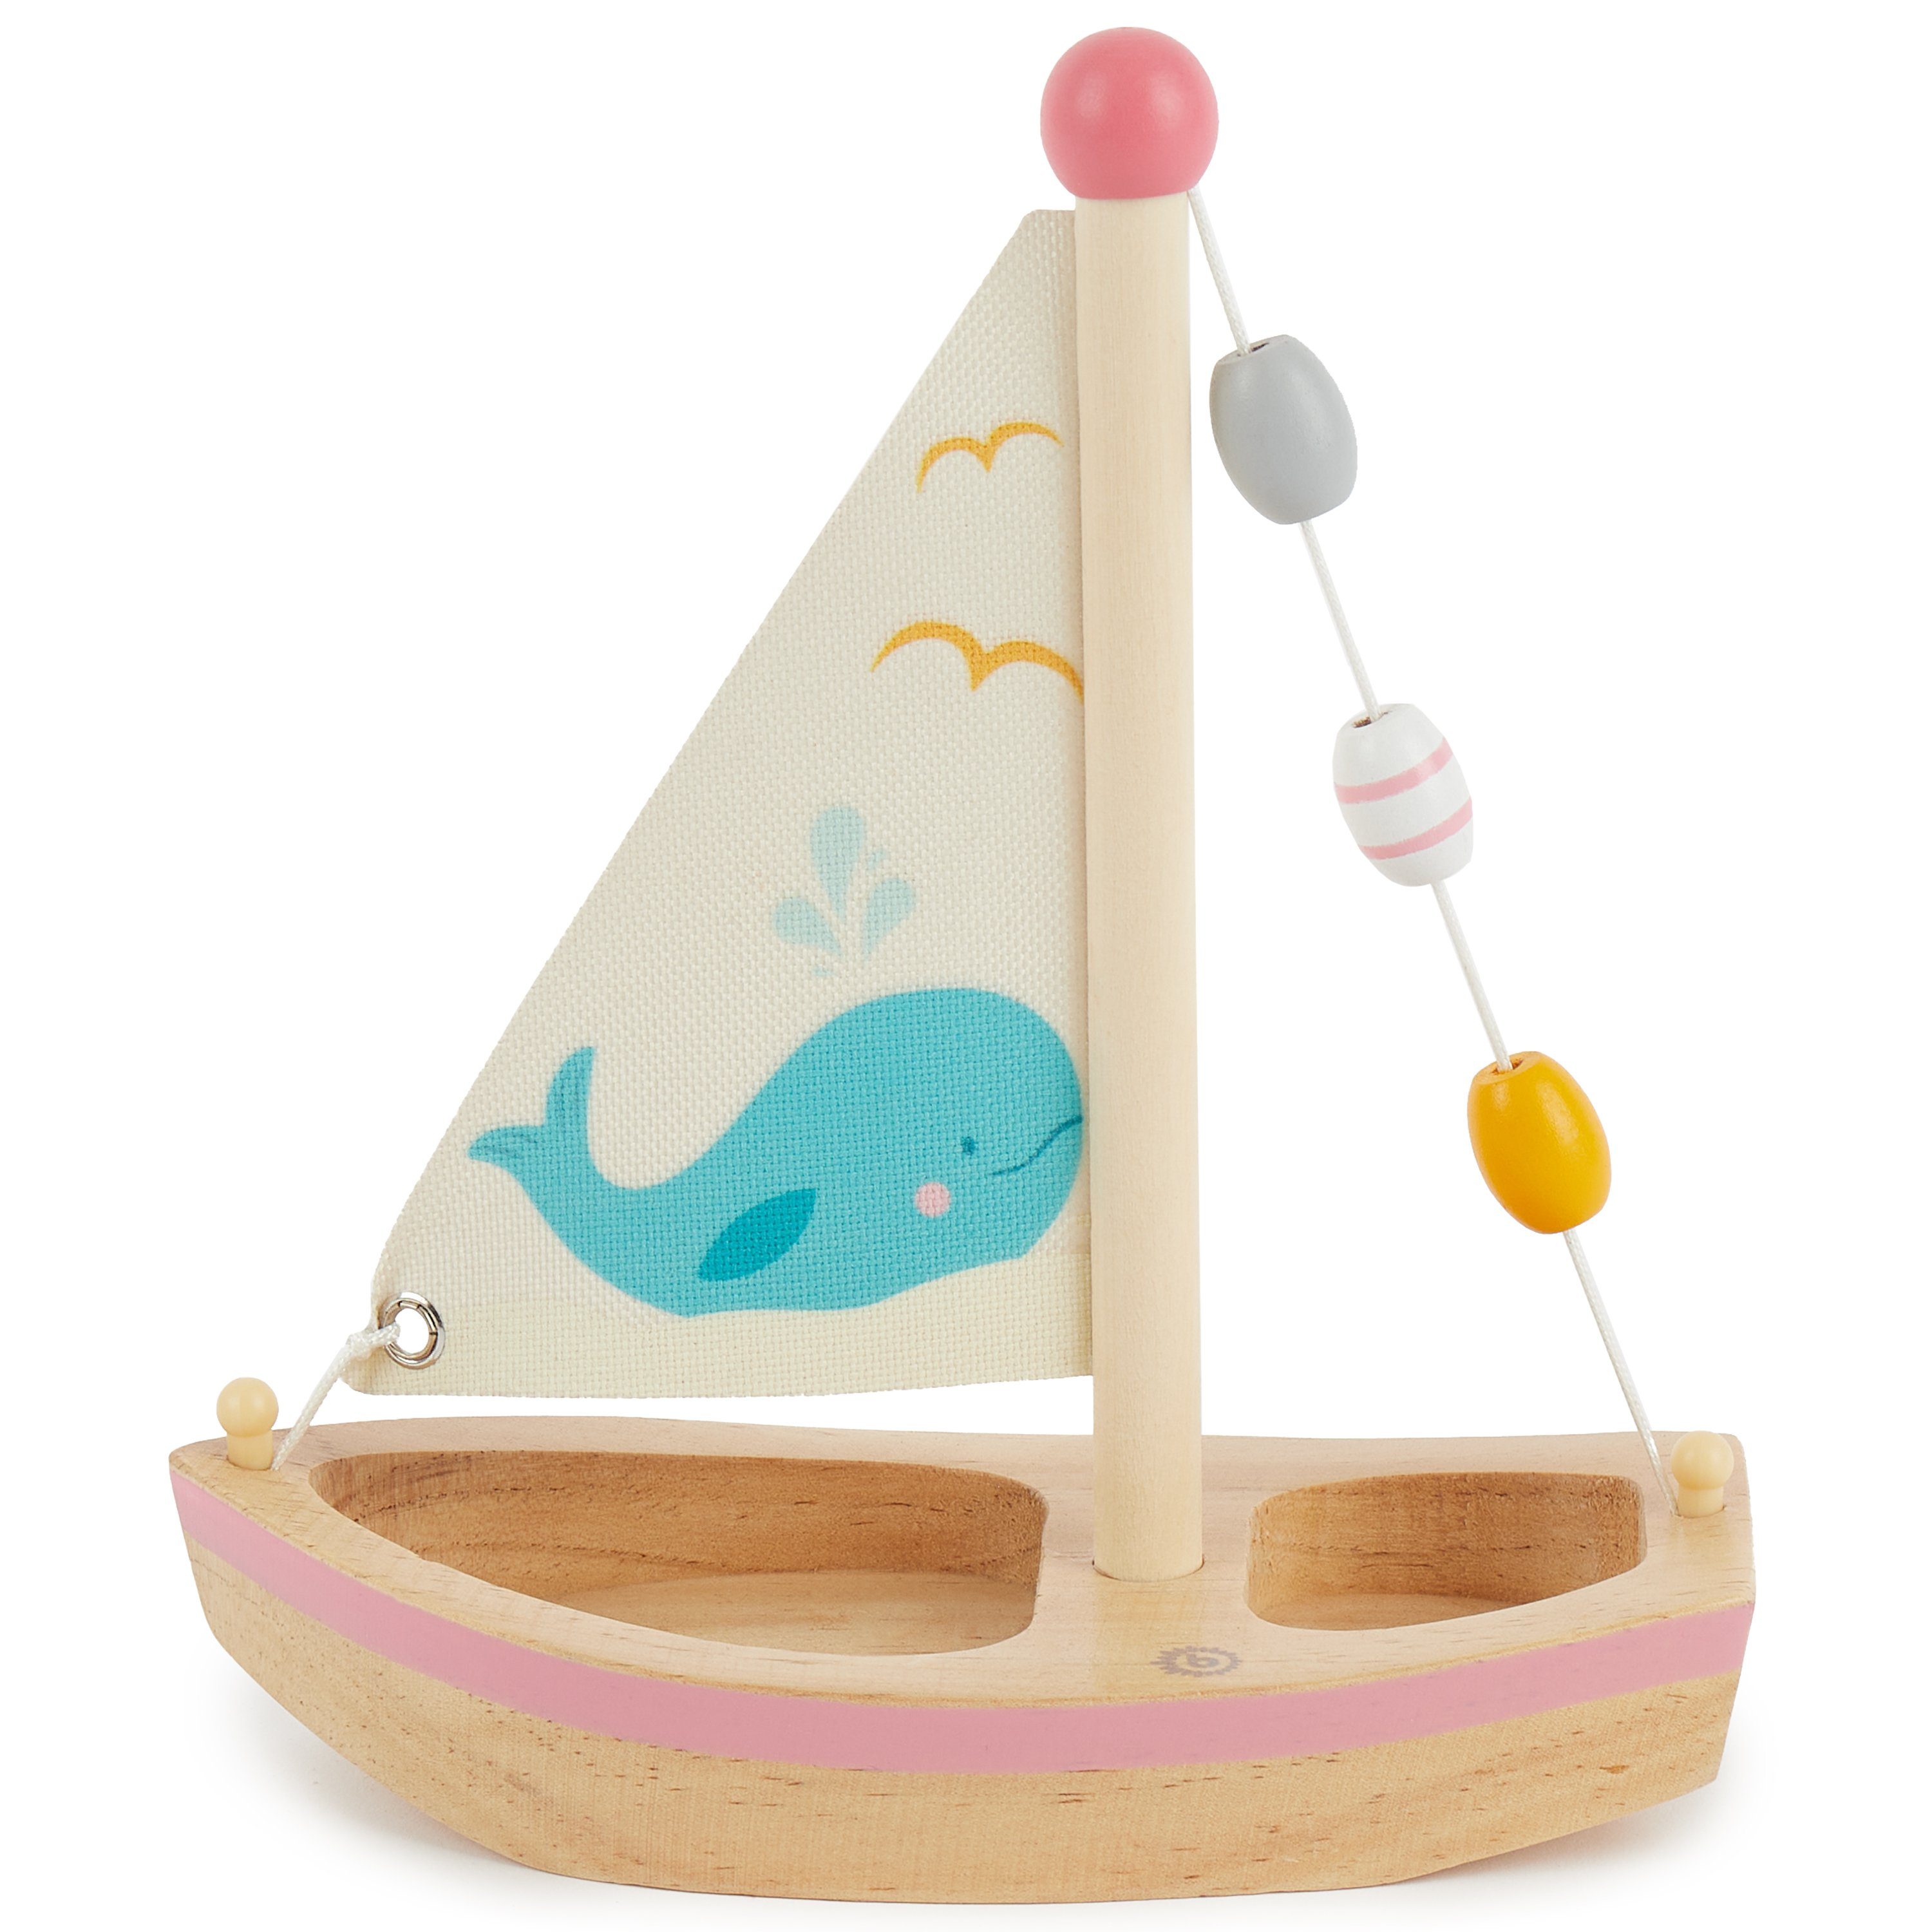 BIECO Badespielzeug Bieco Segelboot Spielzeug Kinder Holz Spielzeug 20x18 cm Wasser Spielzeug Schiff Spielzeug mit Segel Boot Spielzeug für Wasser Holzboot Schwimmfähig Strand Spielsachen Segelboot Deko